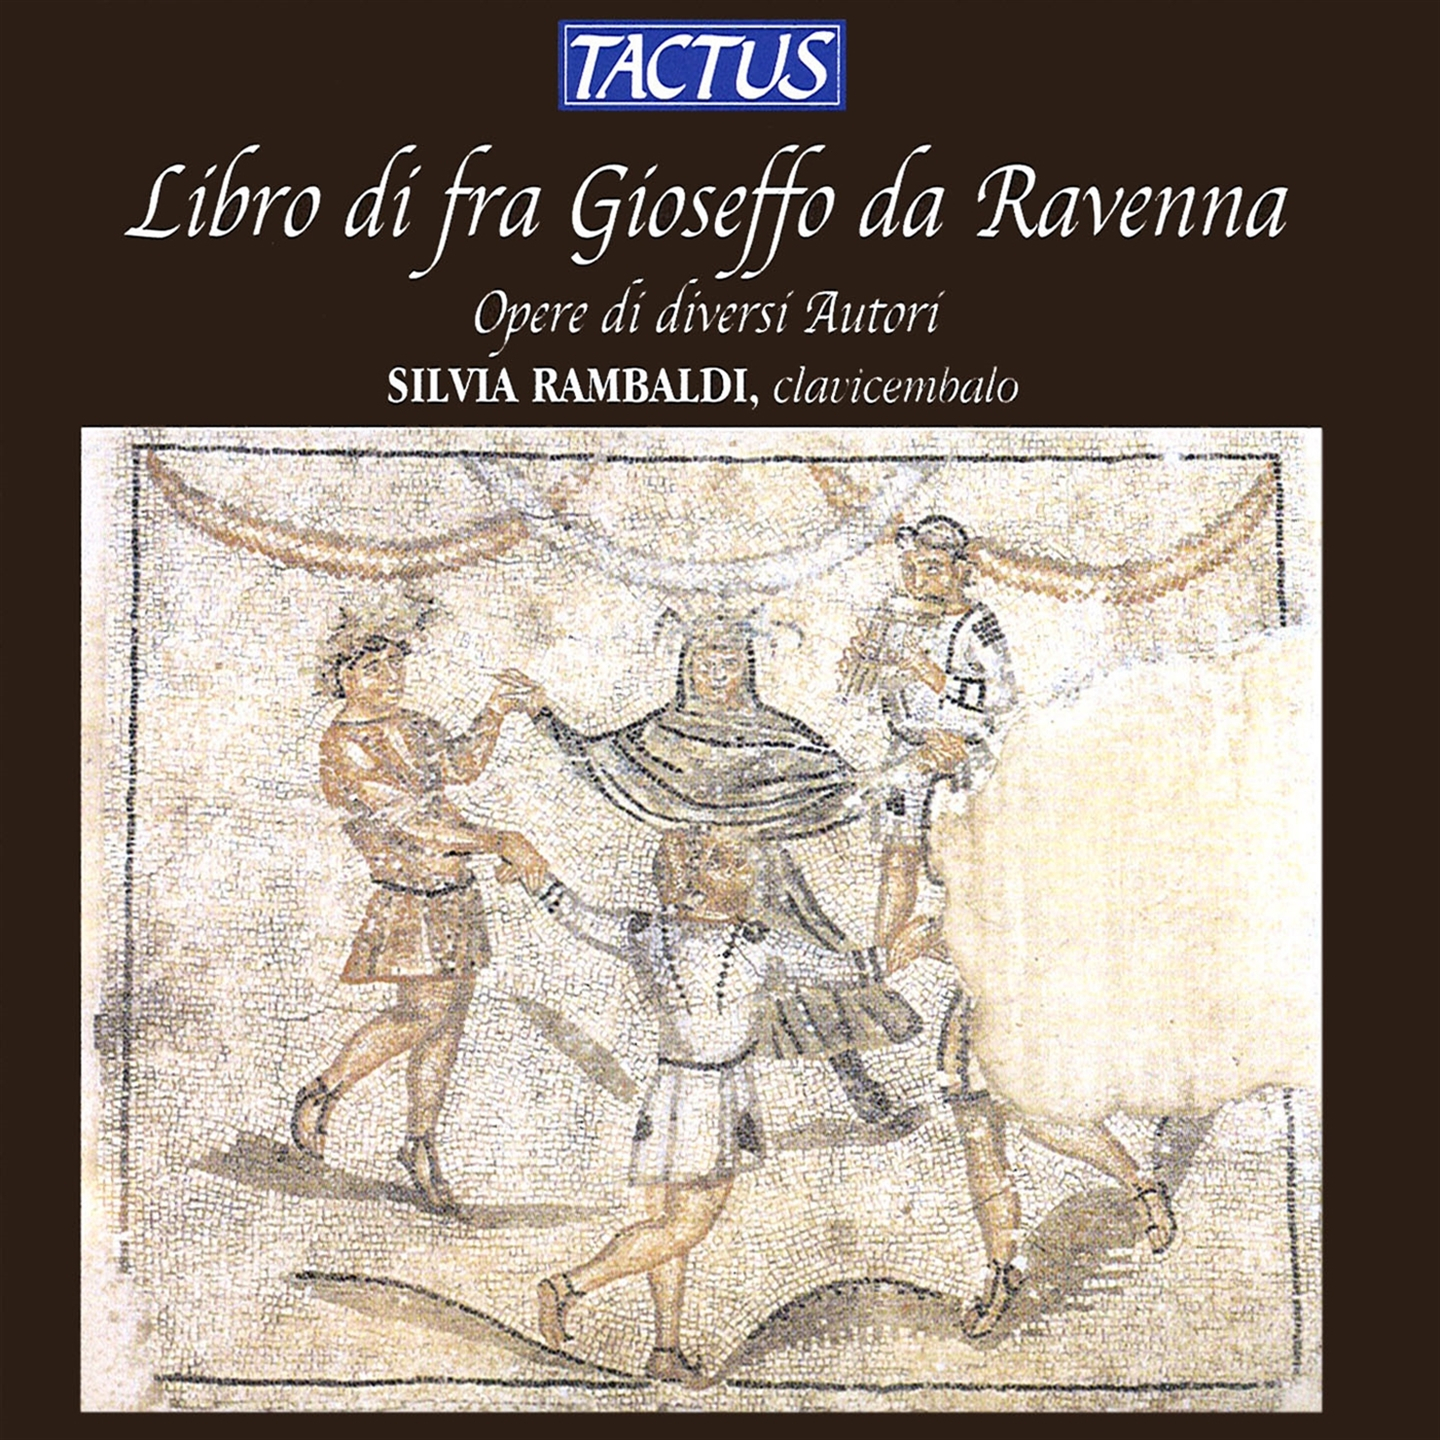 Rambaldi Silvia - Libro Di Fra Gioseffo Da Ra. - Photo 1/1